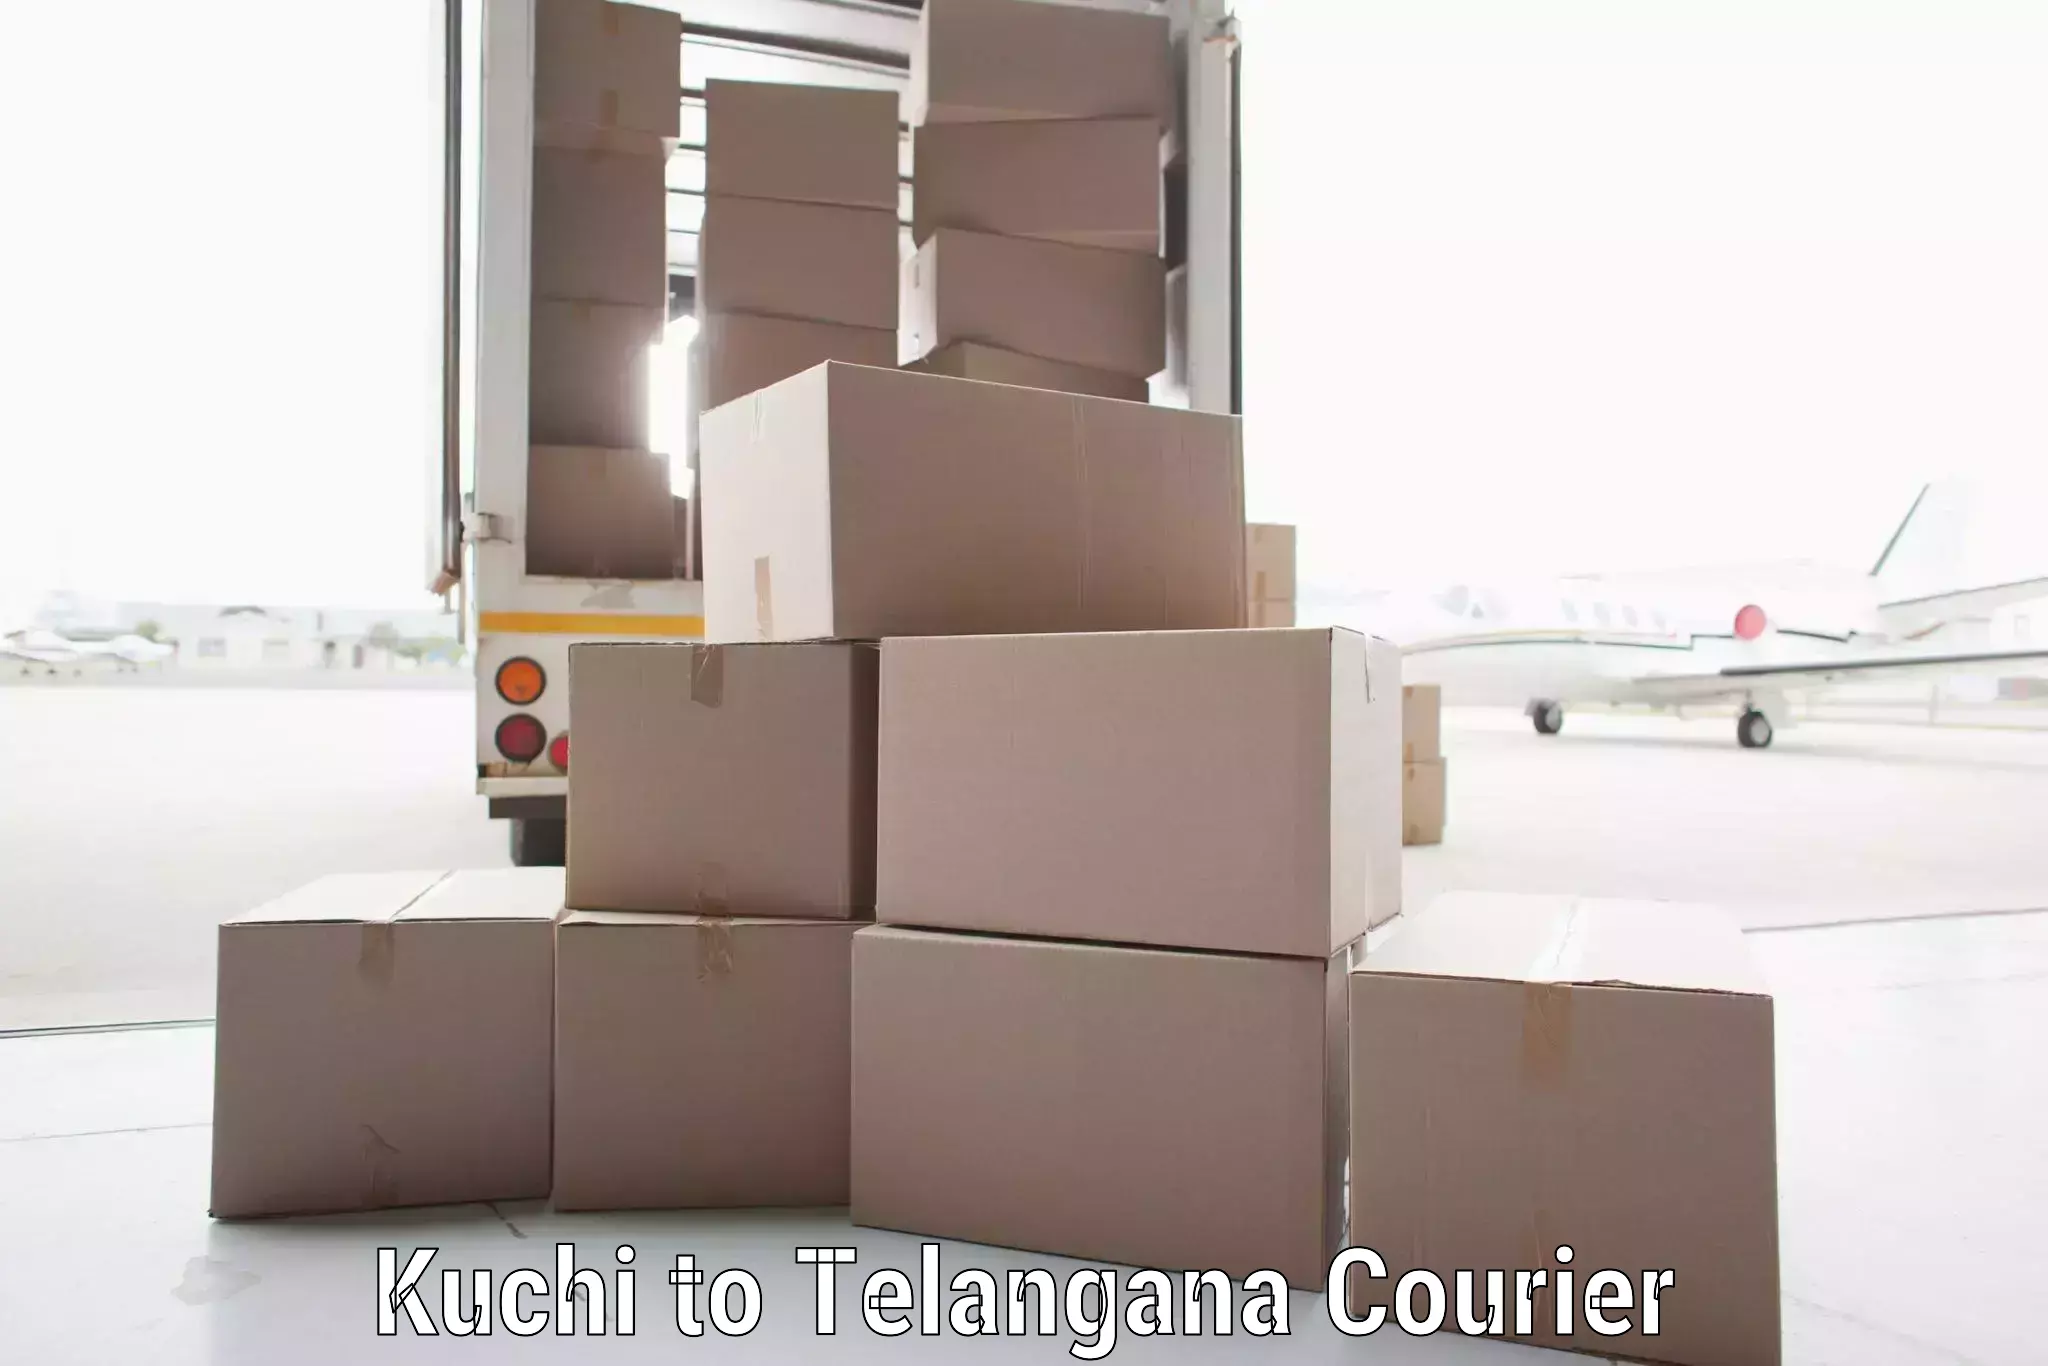 Express logistics providers Kuchi to Yellareddipet